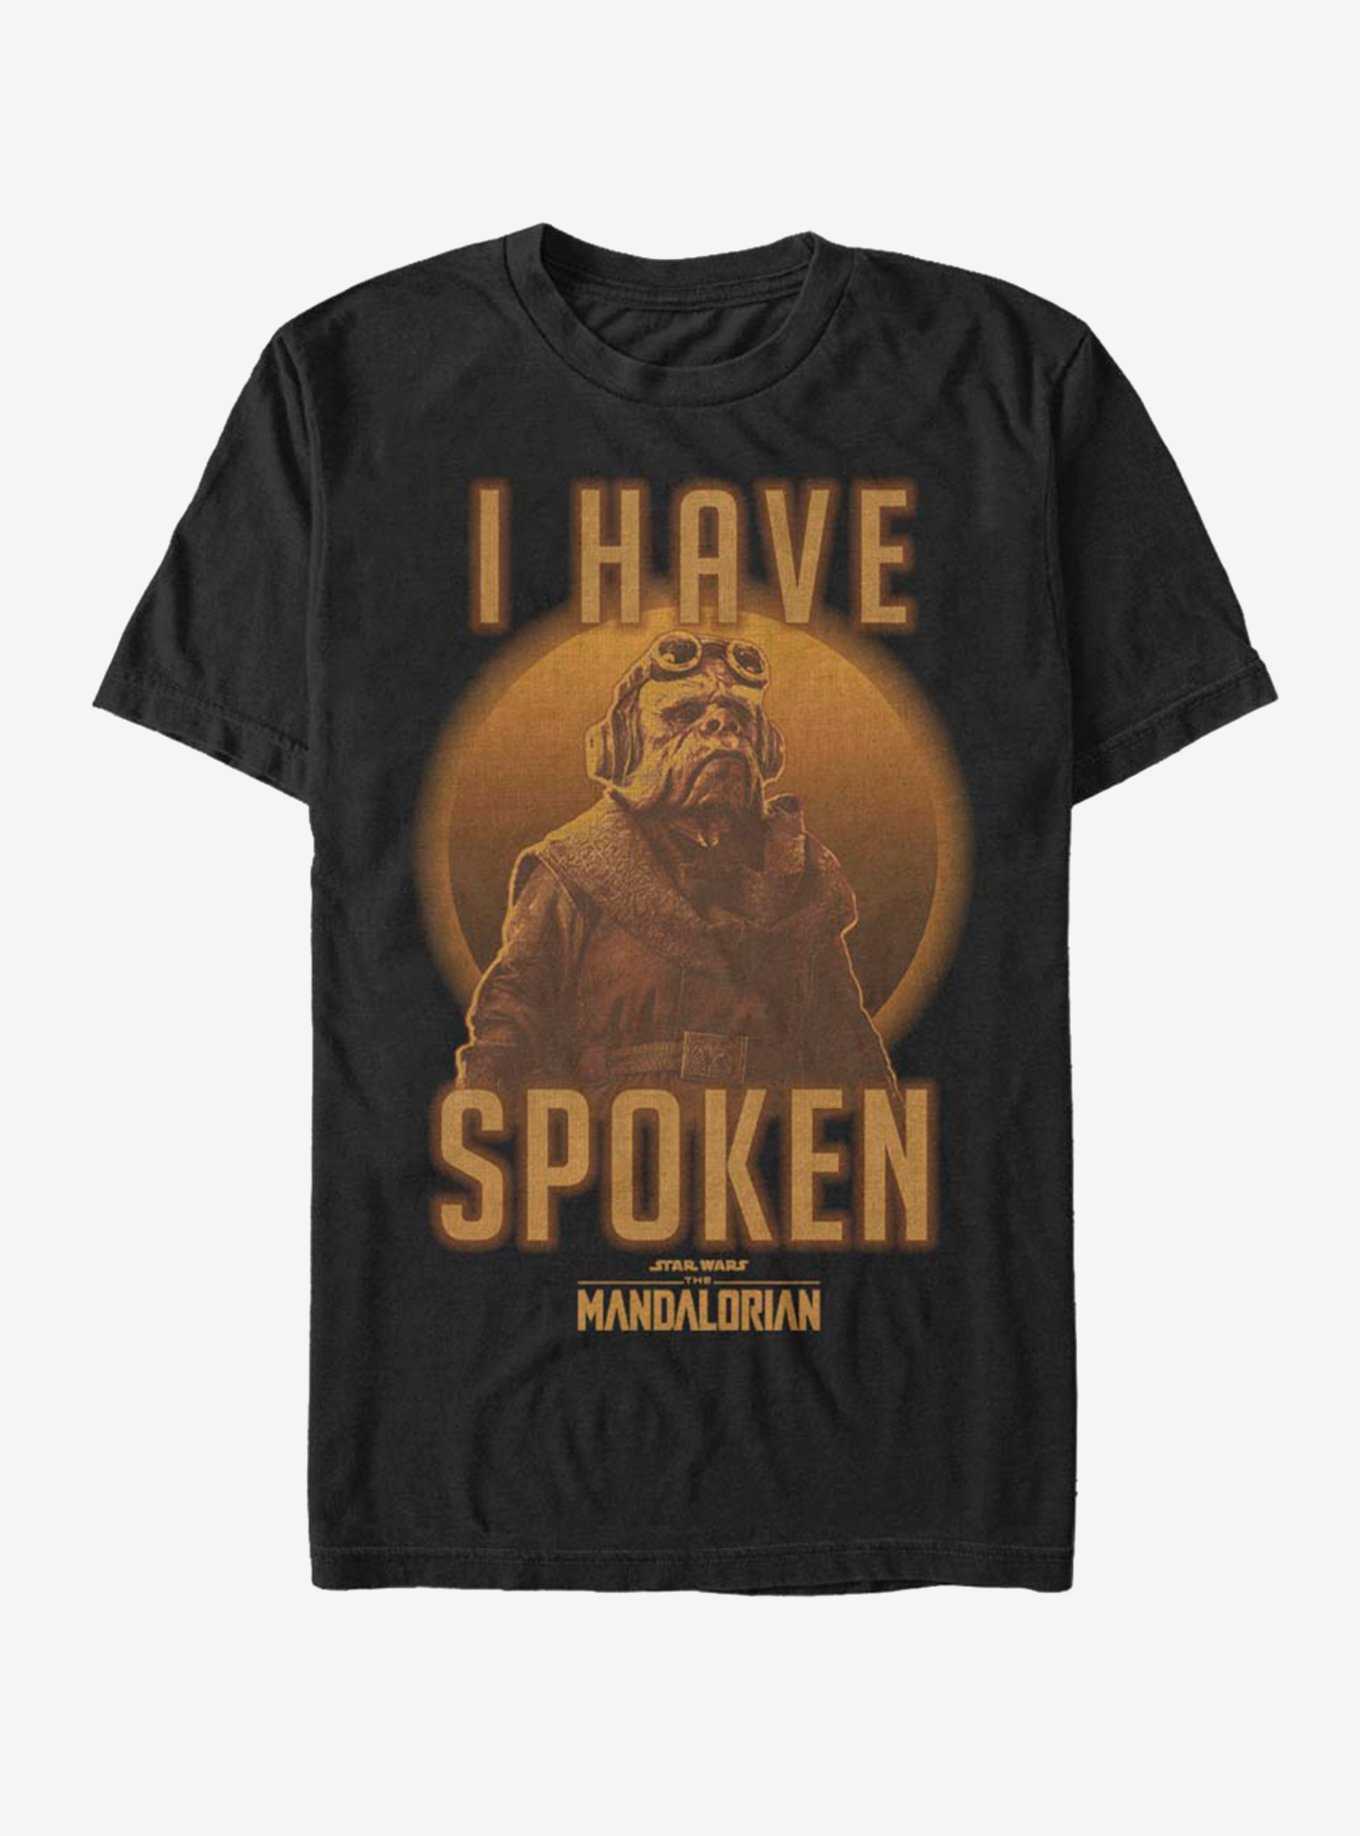 The Mandalorian Kuill Has Spoken T-Shirt, , hi-res